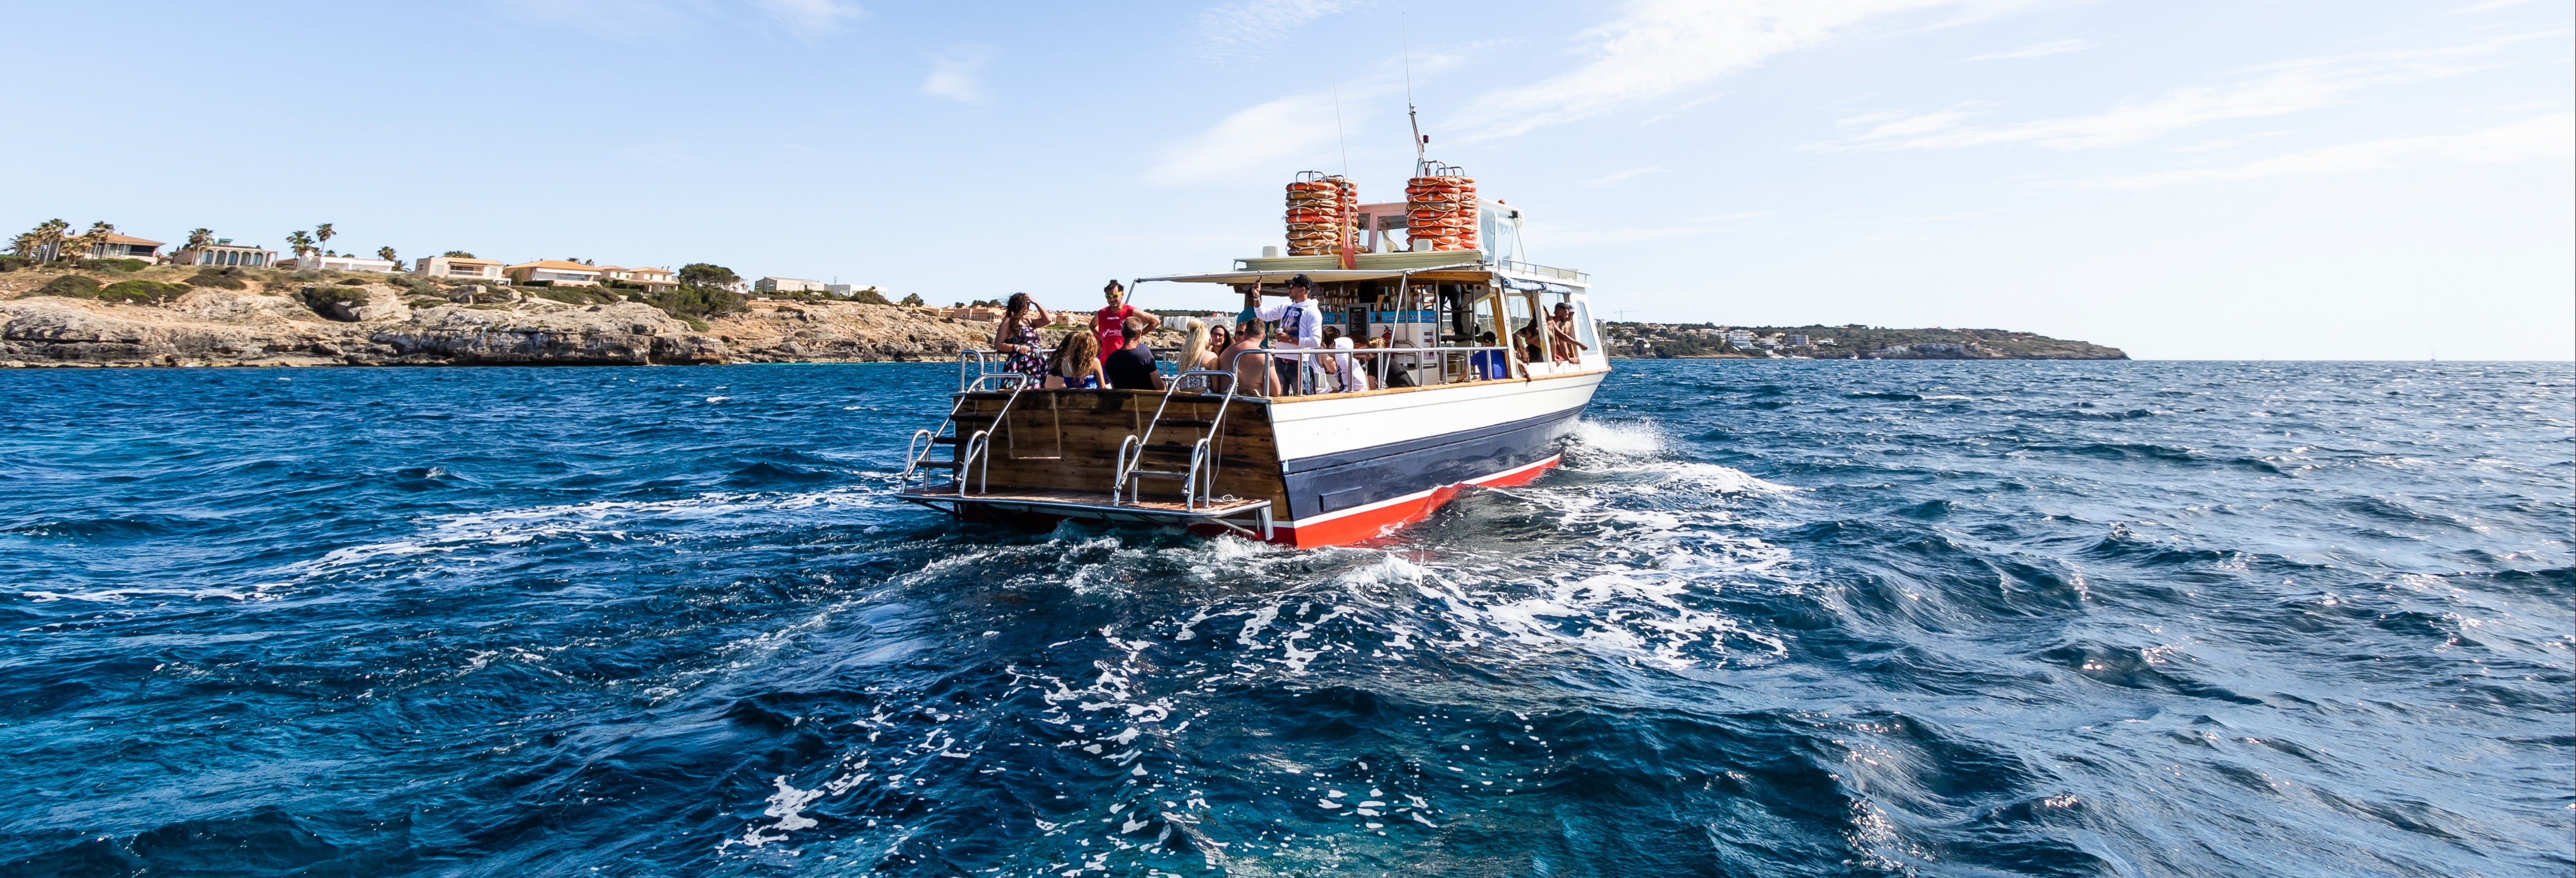 Paseo en barco por la bahía de Palma